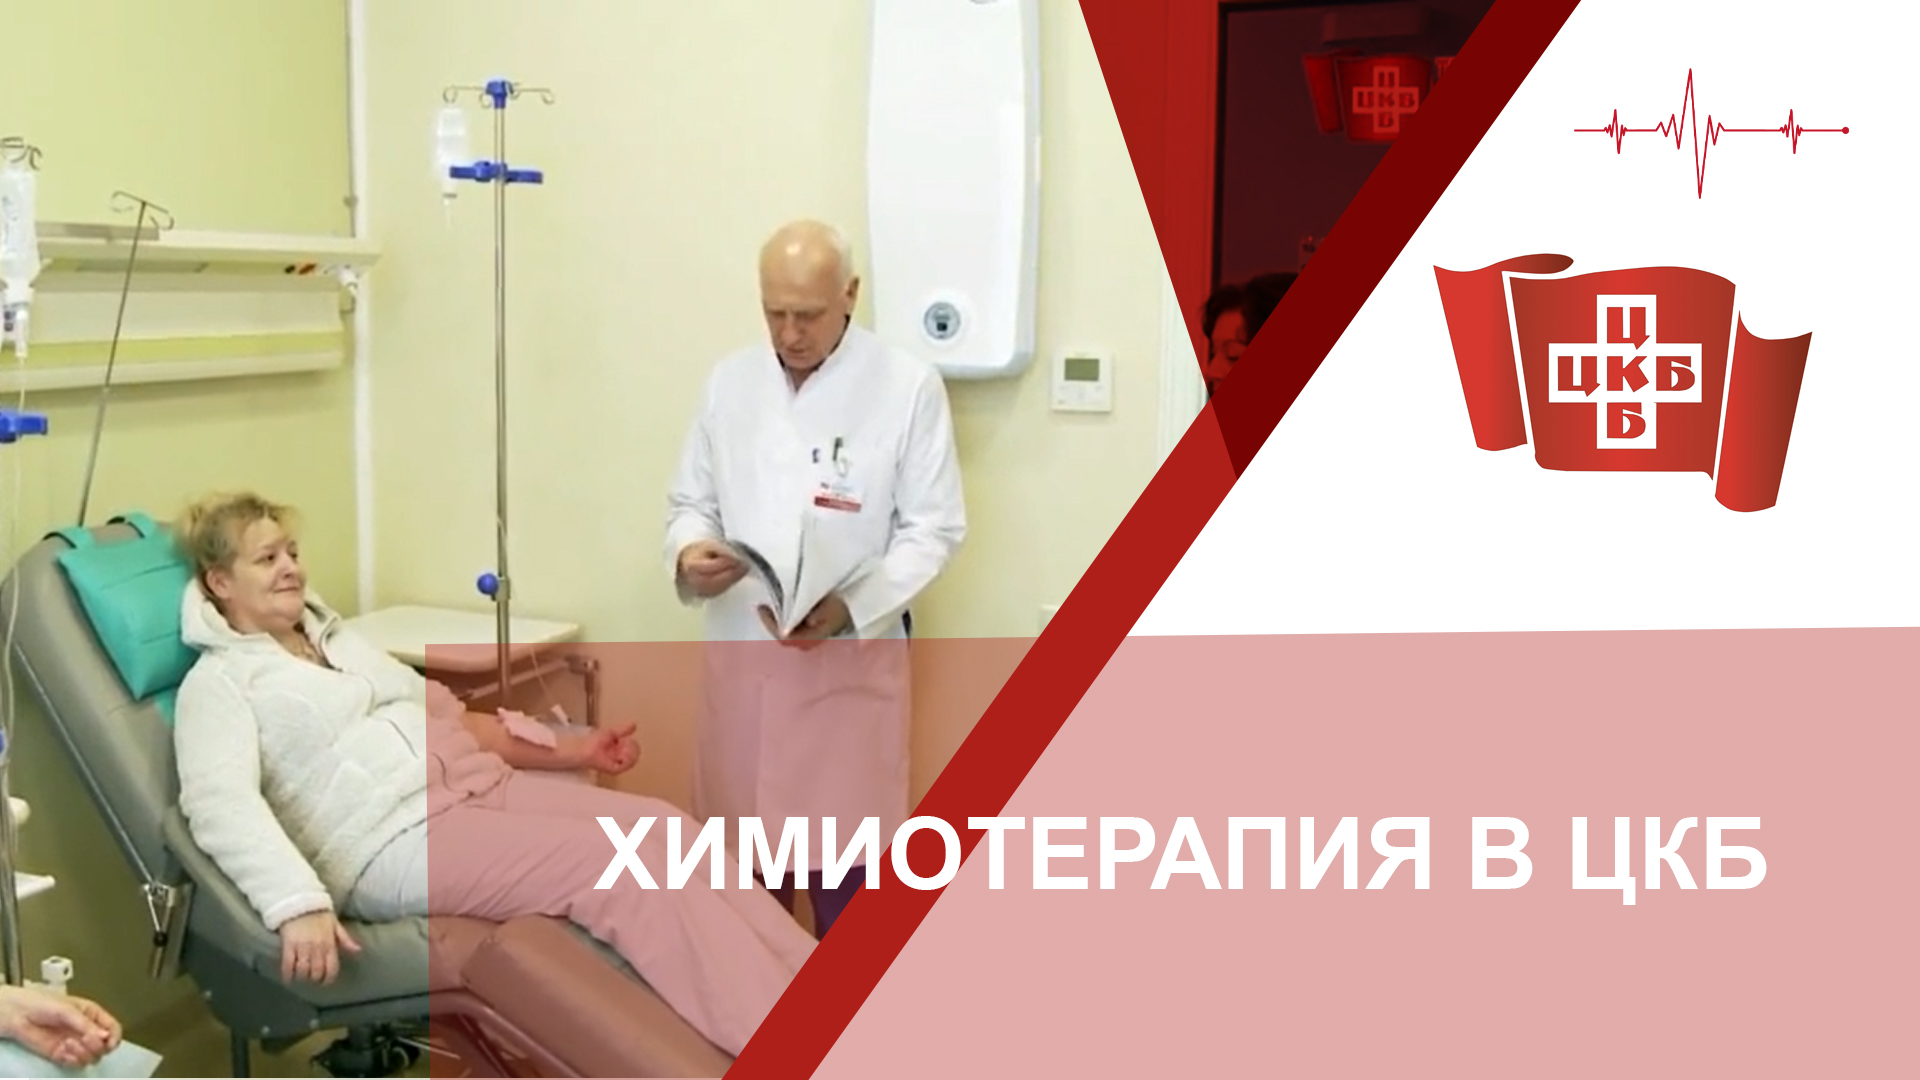 Химиотерапия в ЦКБ с поликлиникой УДП РФ